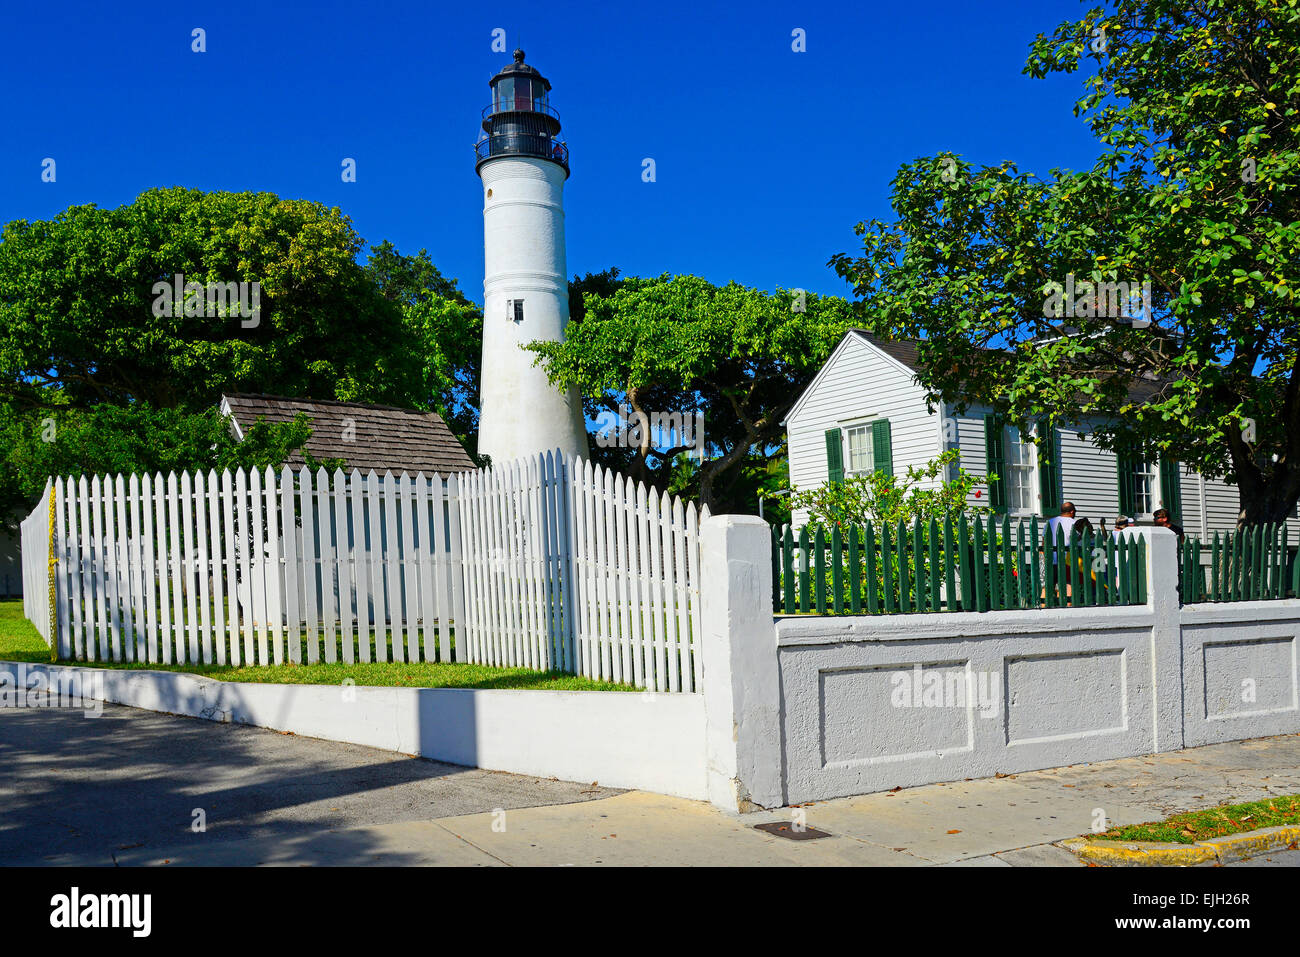 Le phare de Key West à Key West en Floride Floride destination pour les Caraïbes de l'ouest de Tampa Crusie Banque D'Images